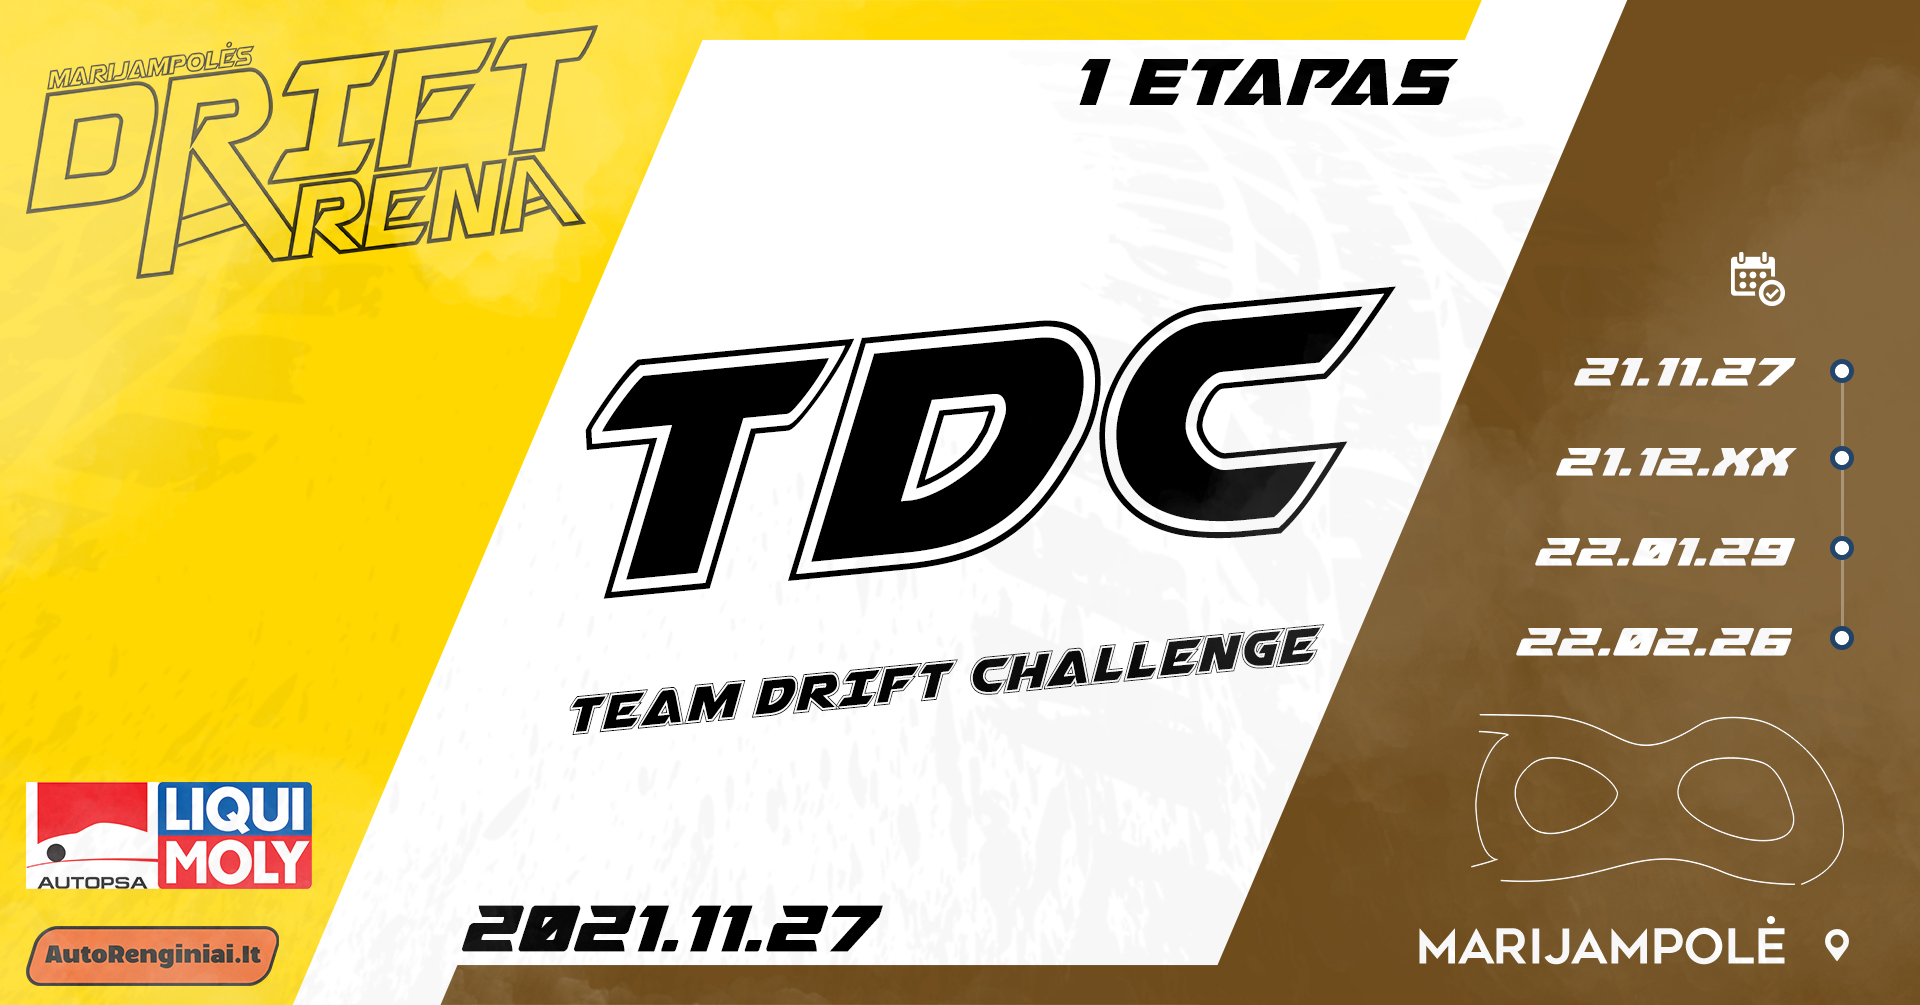 Team Drift Challenge / Drift is Fun